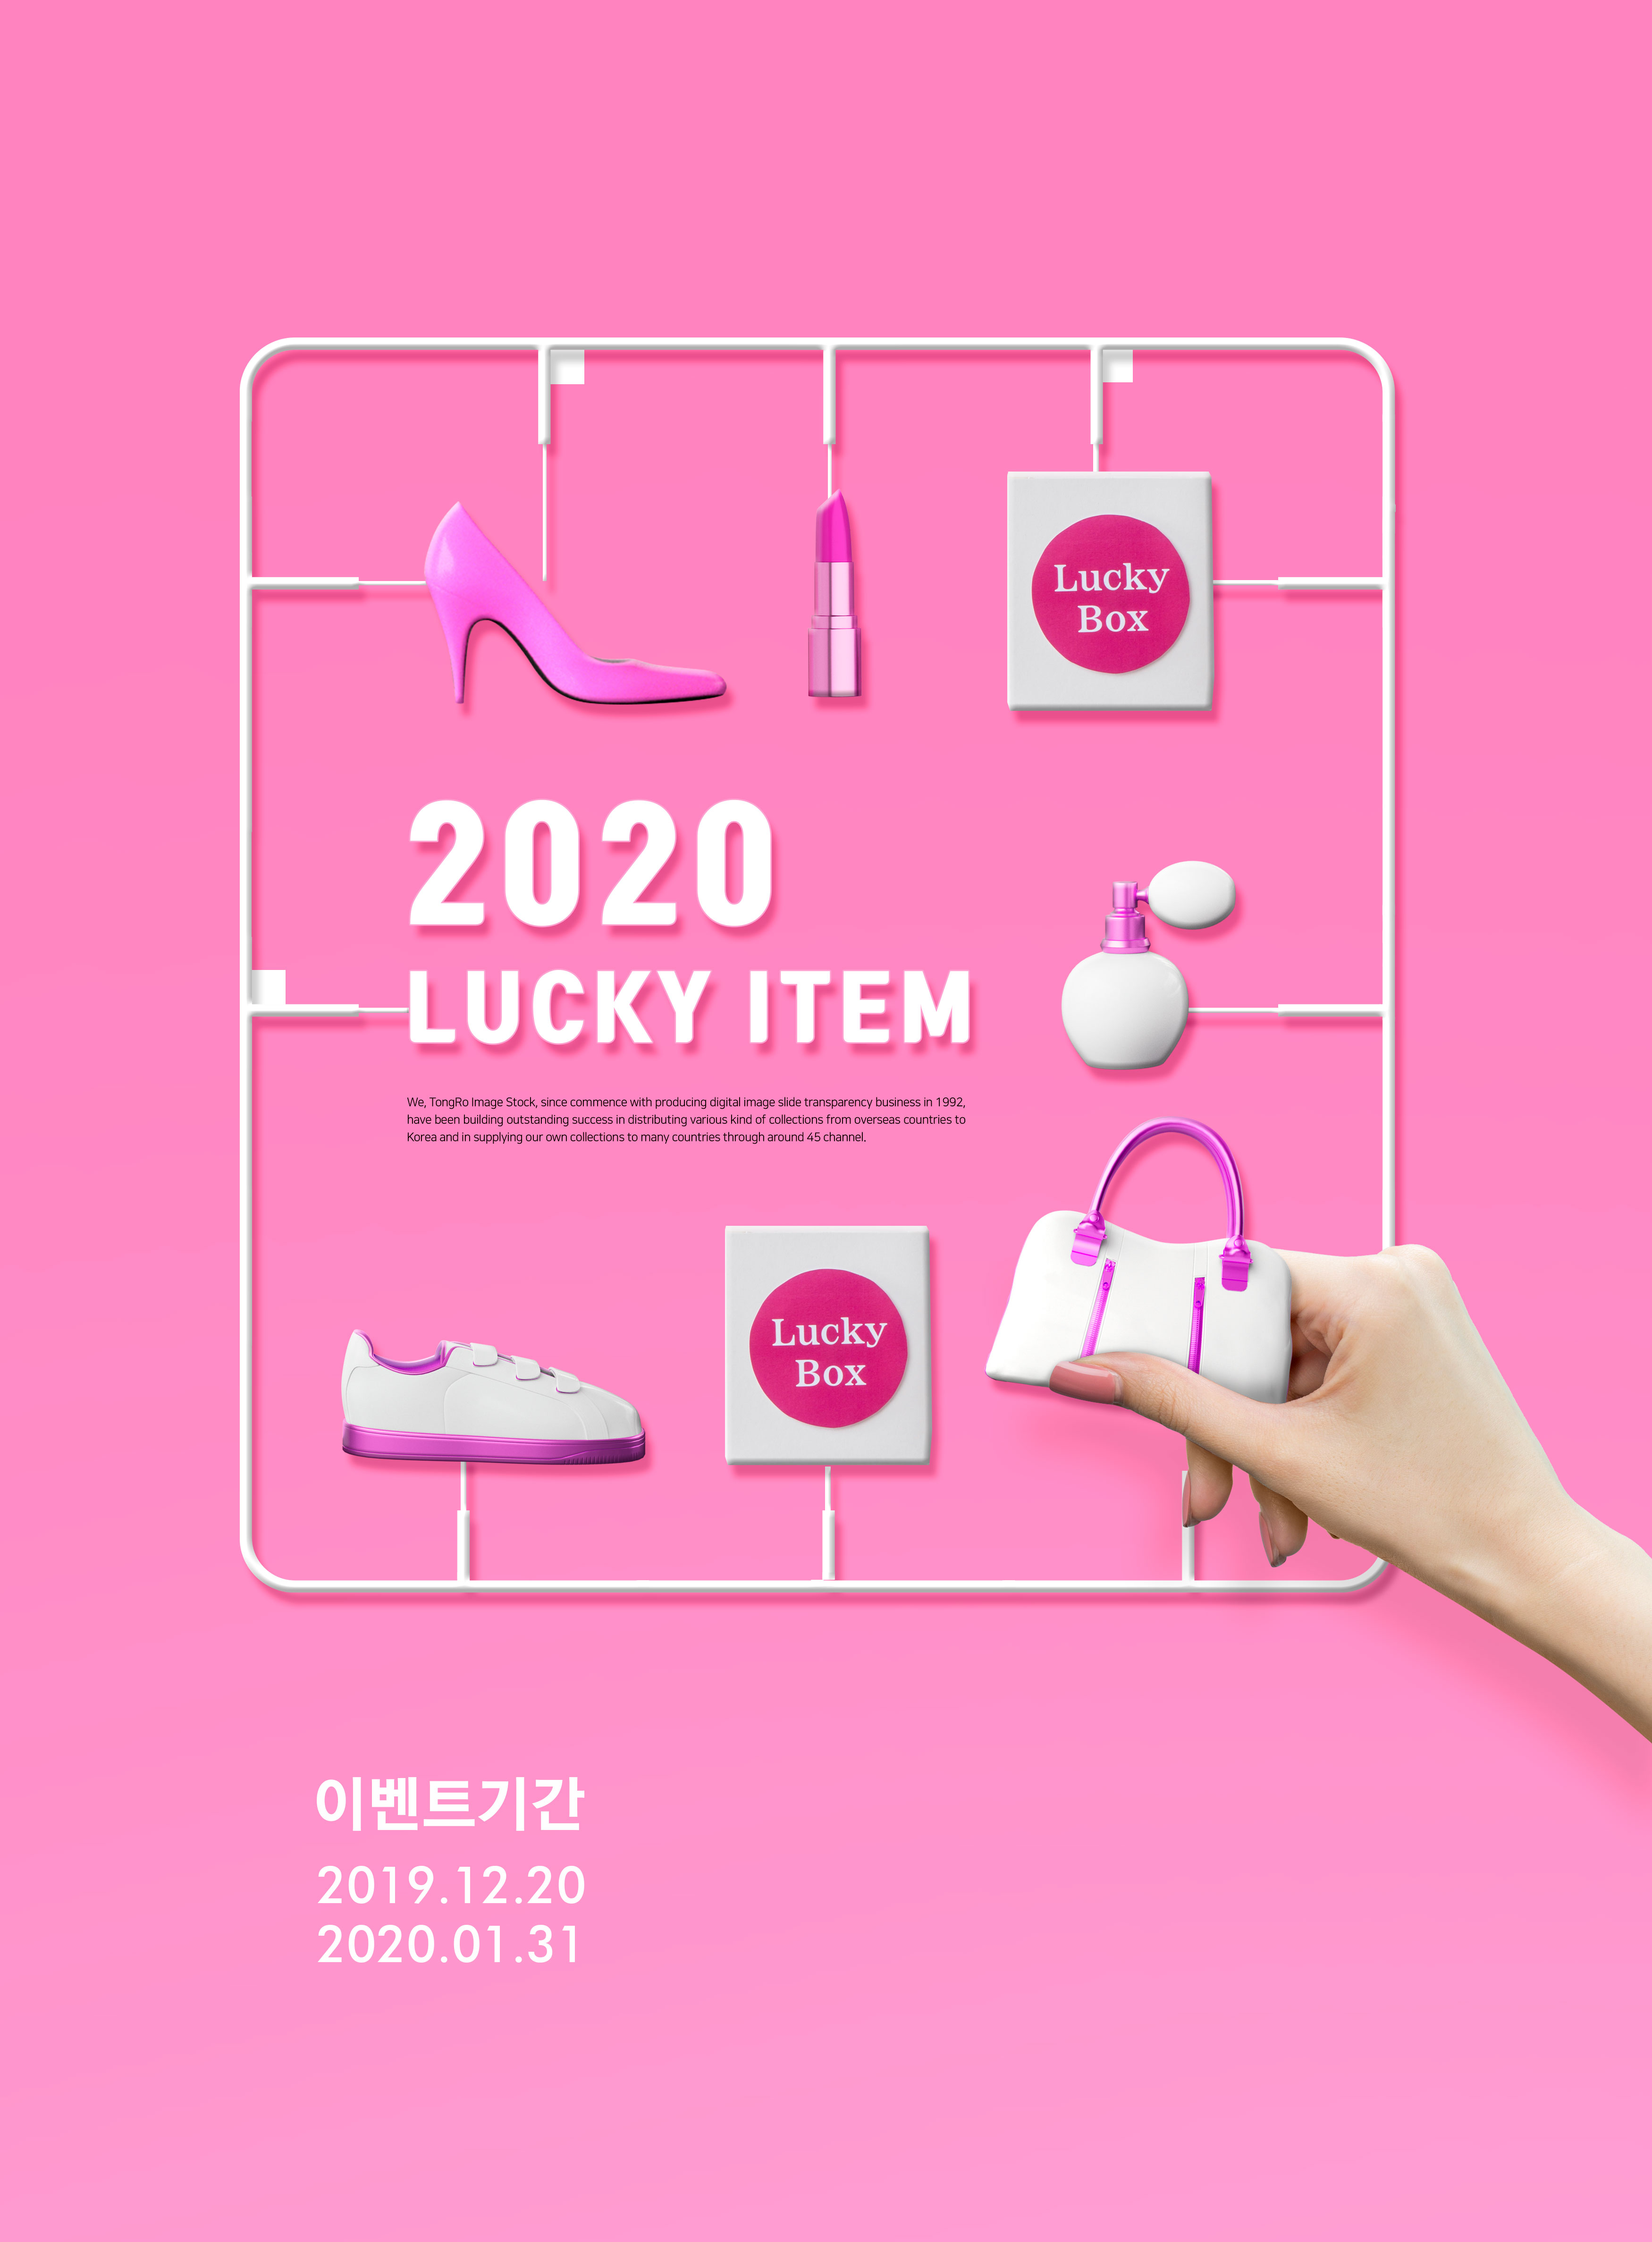 粉色主题女性购物促销活动推广海报PSD素材16设计网精选素材插图